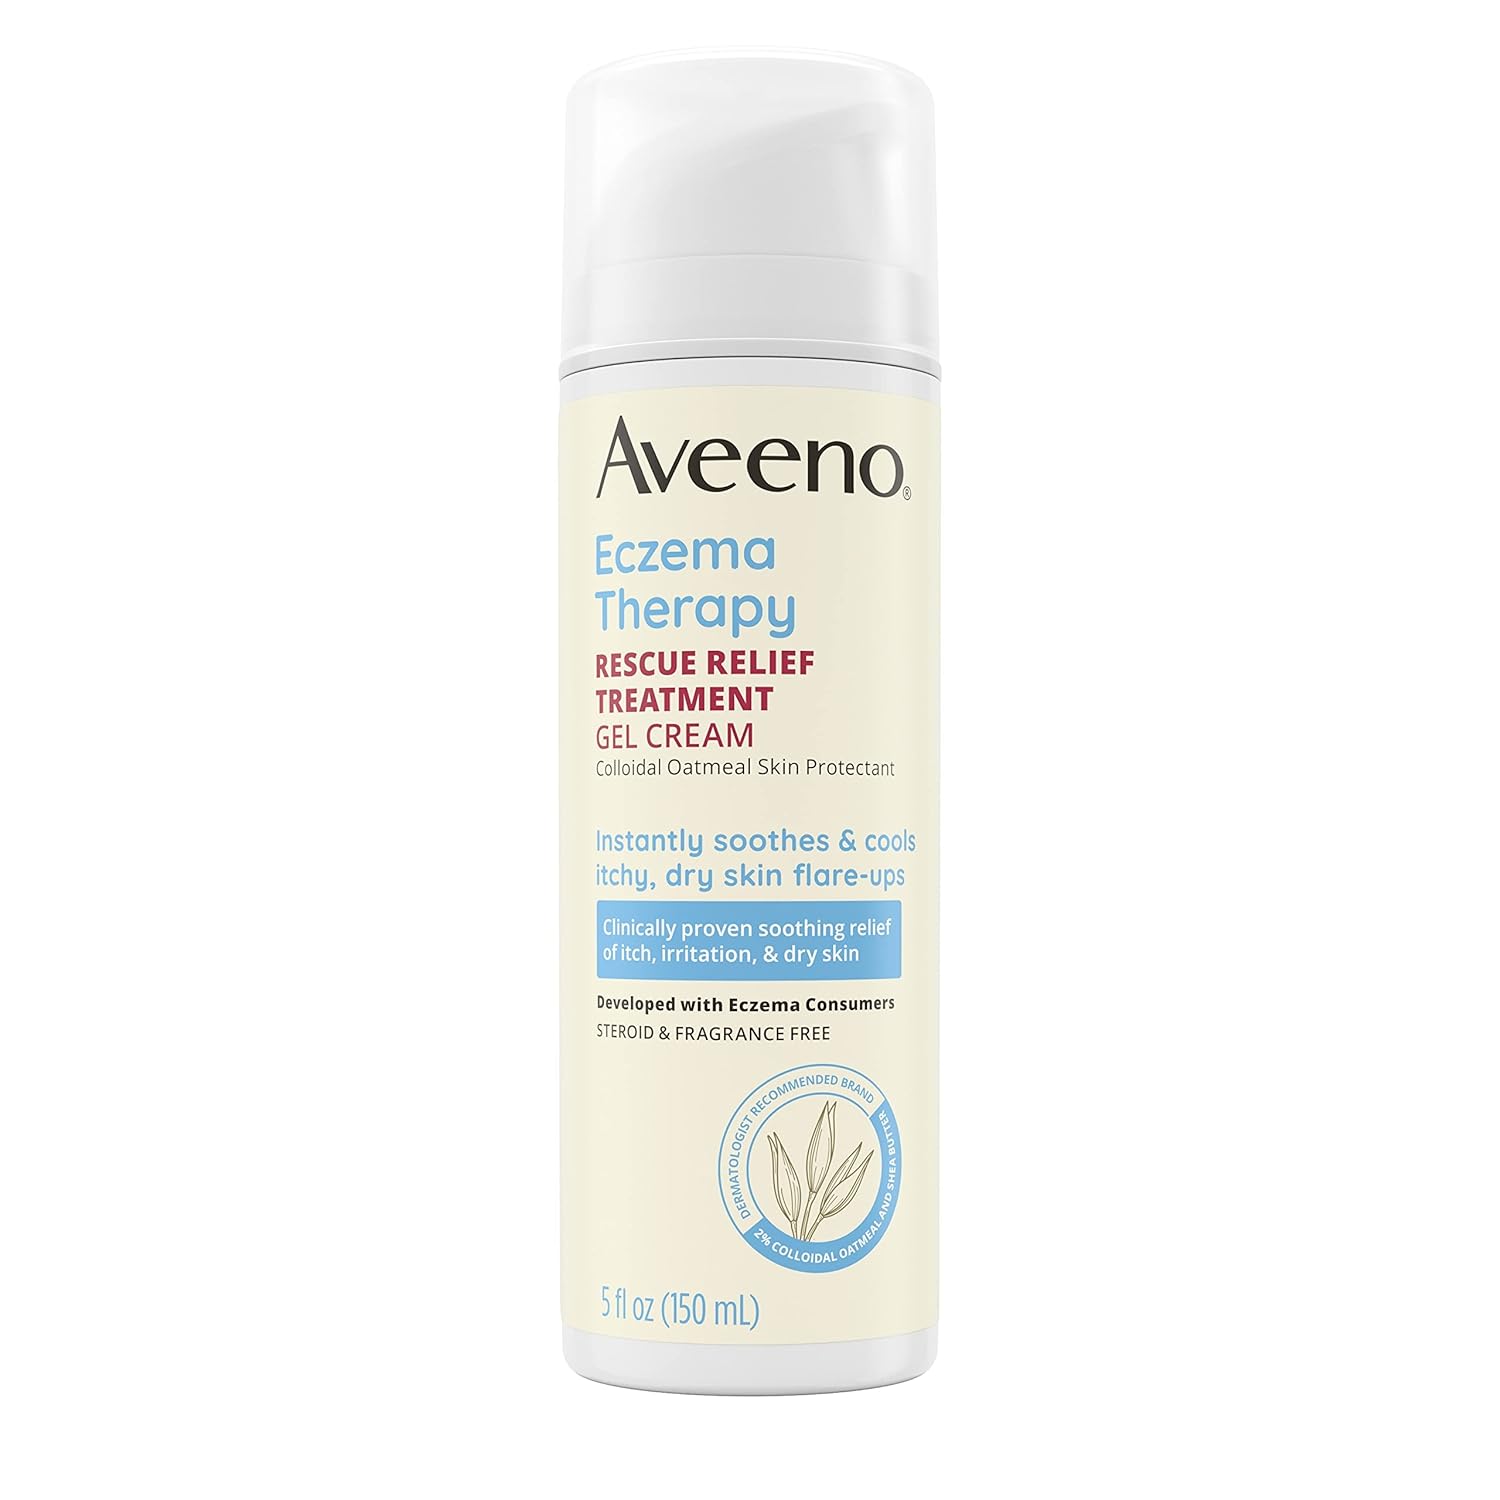 Aveeno Eczema Therapy Rescue Relief Treatment Gel Cream, 5.0 fl. Oz5 F